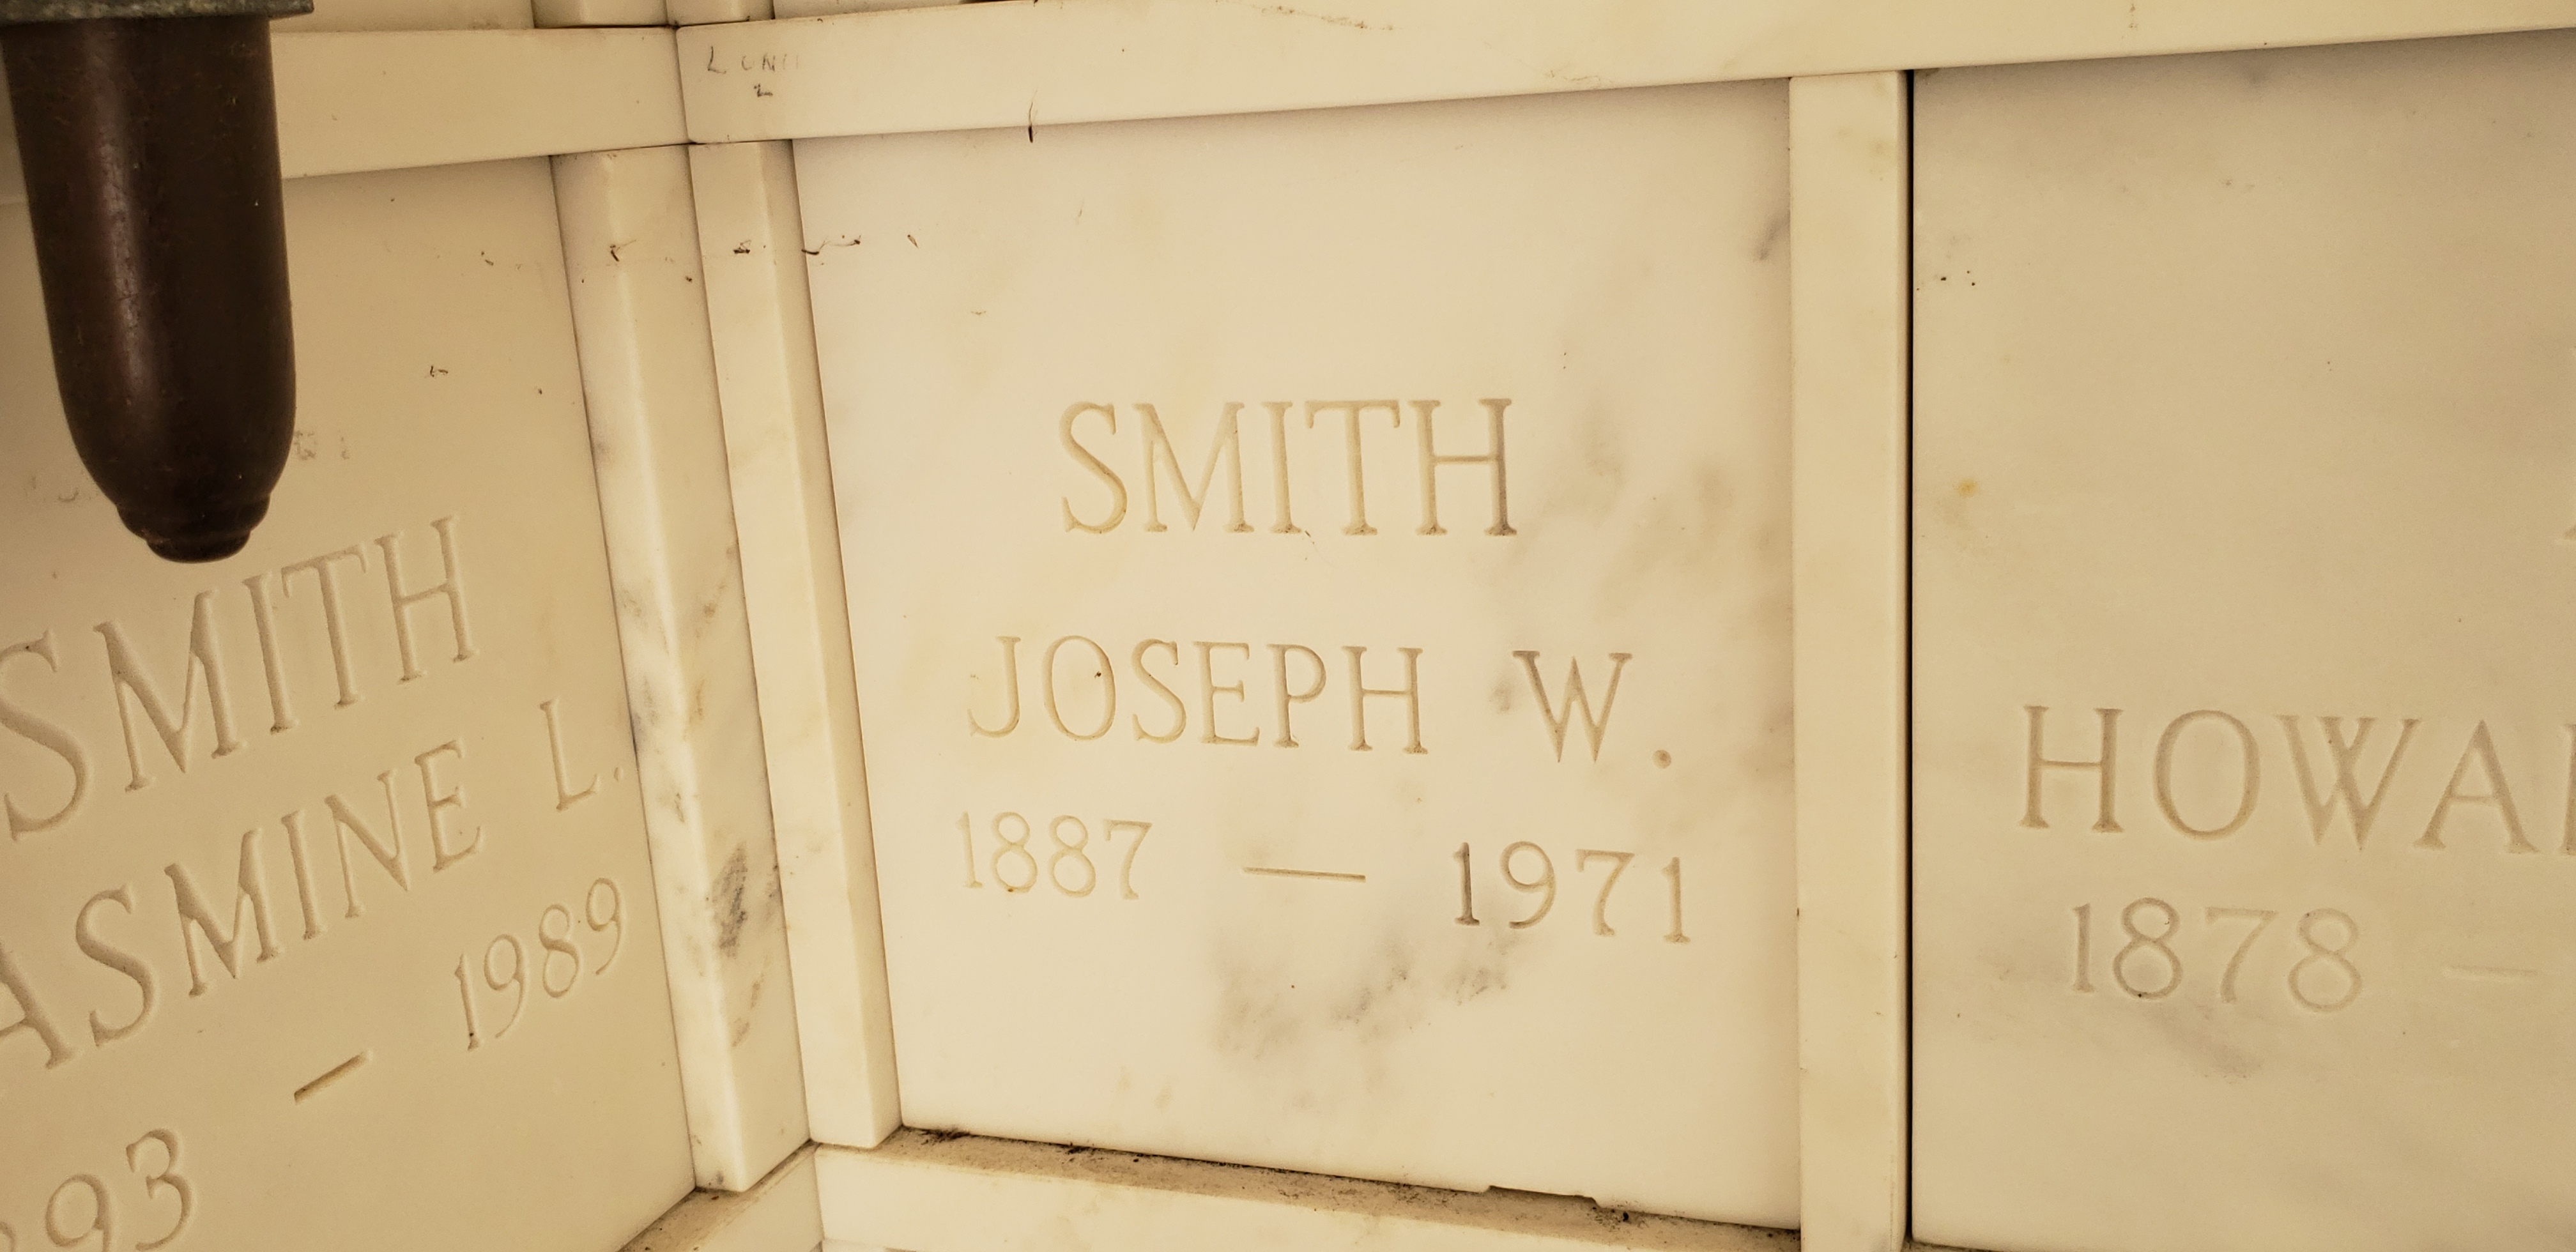 Joseph W Smith